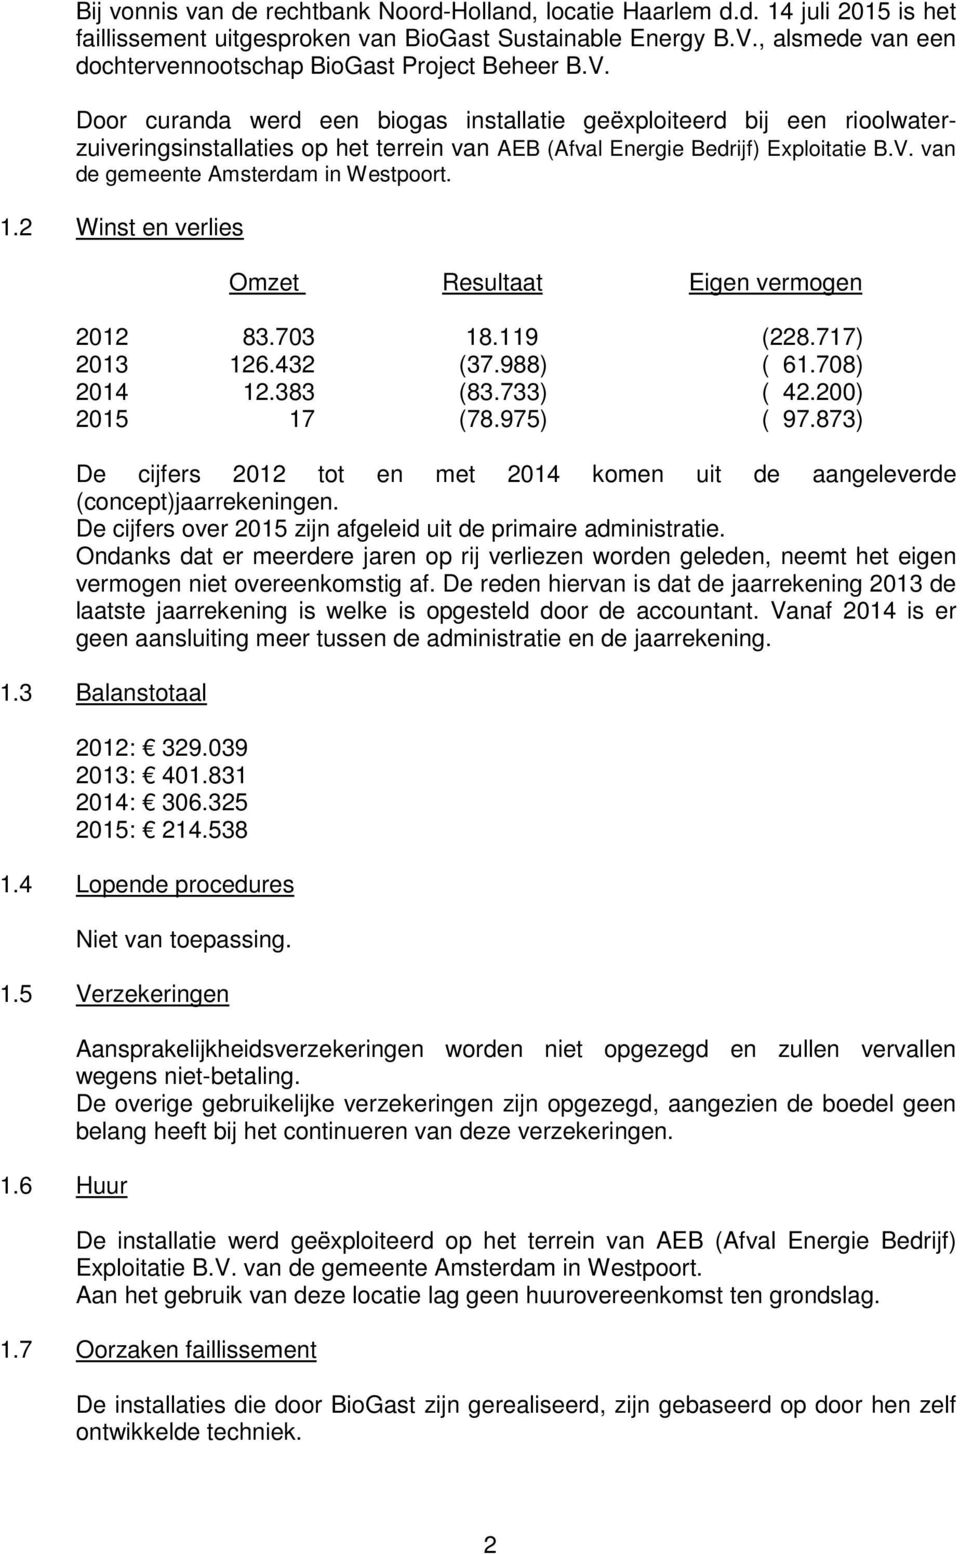 Door curanda werd een biogas installatie geëxploiteerd bij een rioolwaterzuiveringsinstallaties op het terrein van AEB (Afval Energie Bedrijf) Exploitatie B.V. van de gemeente Amsterdam in Westpoort.